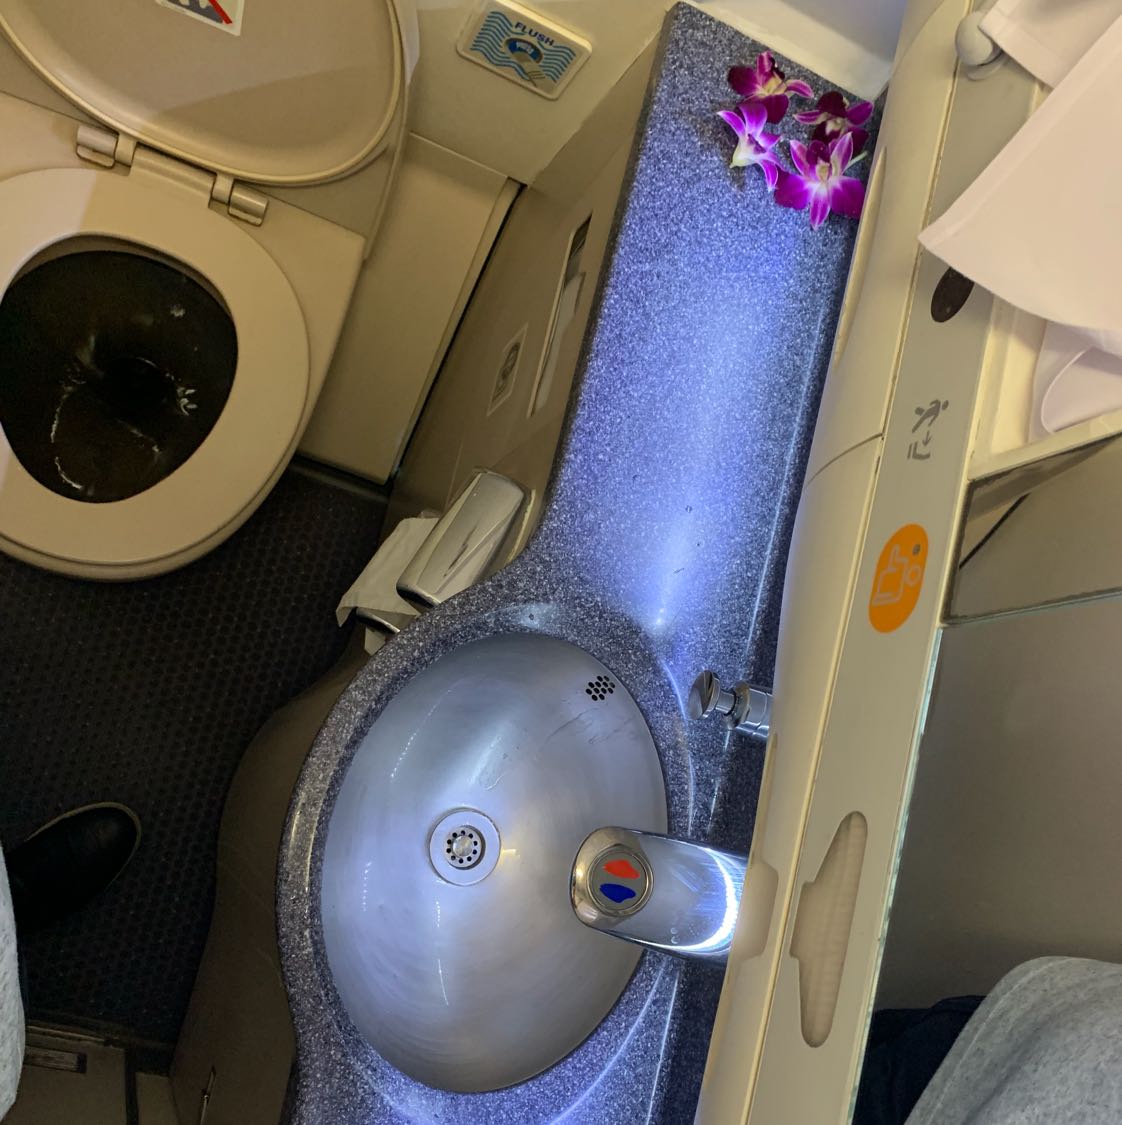 Pernah lihat toilet di dalam pesawat terbang? Ya, seperti itulah sempitnya. Memanfaatkan setiap sudut ruang agar bermanfaat maksimal.